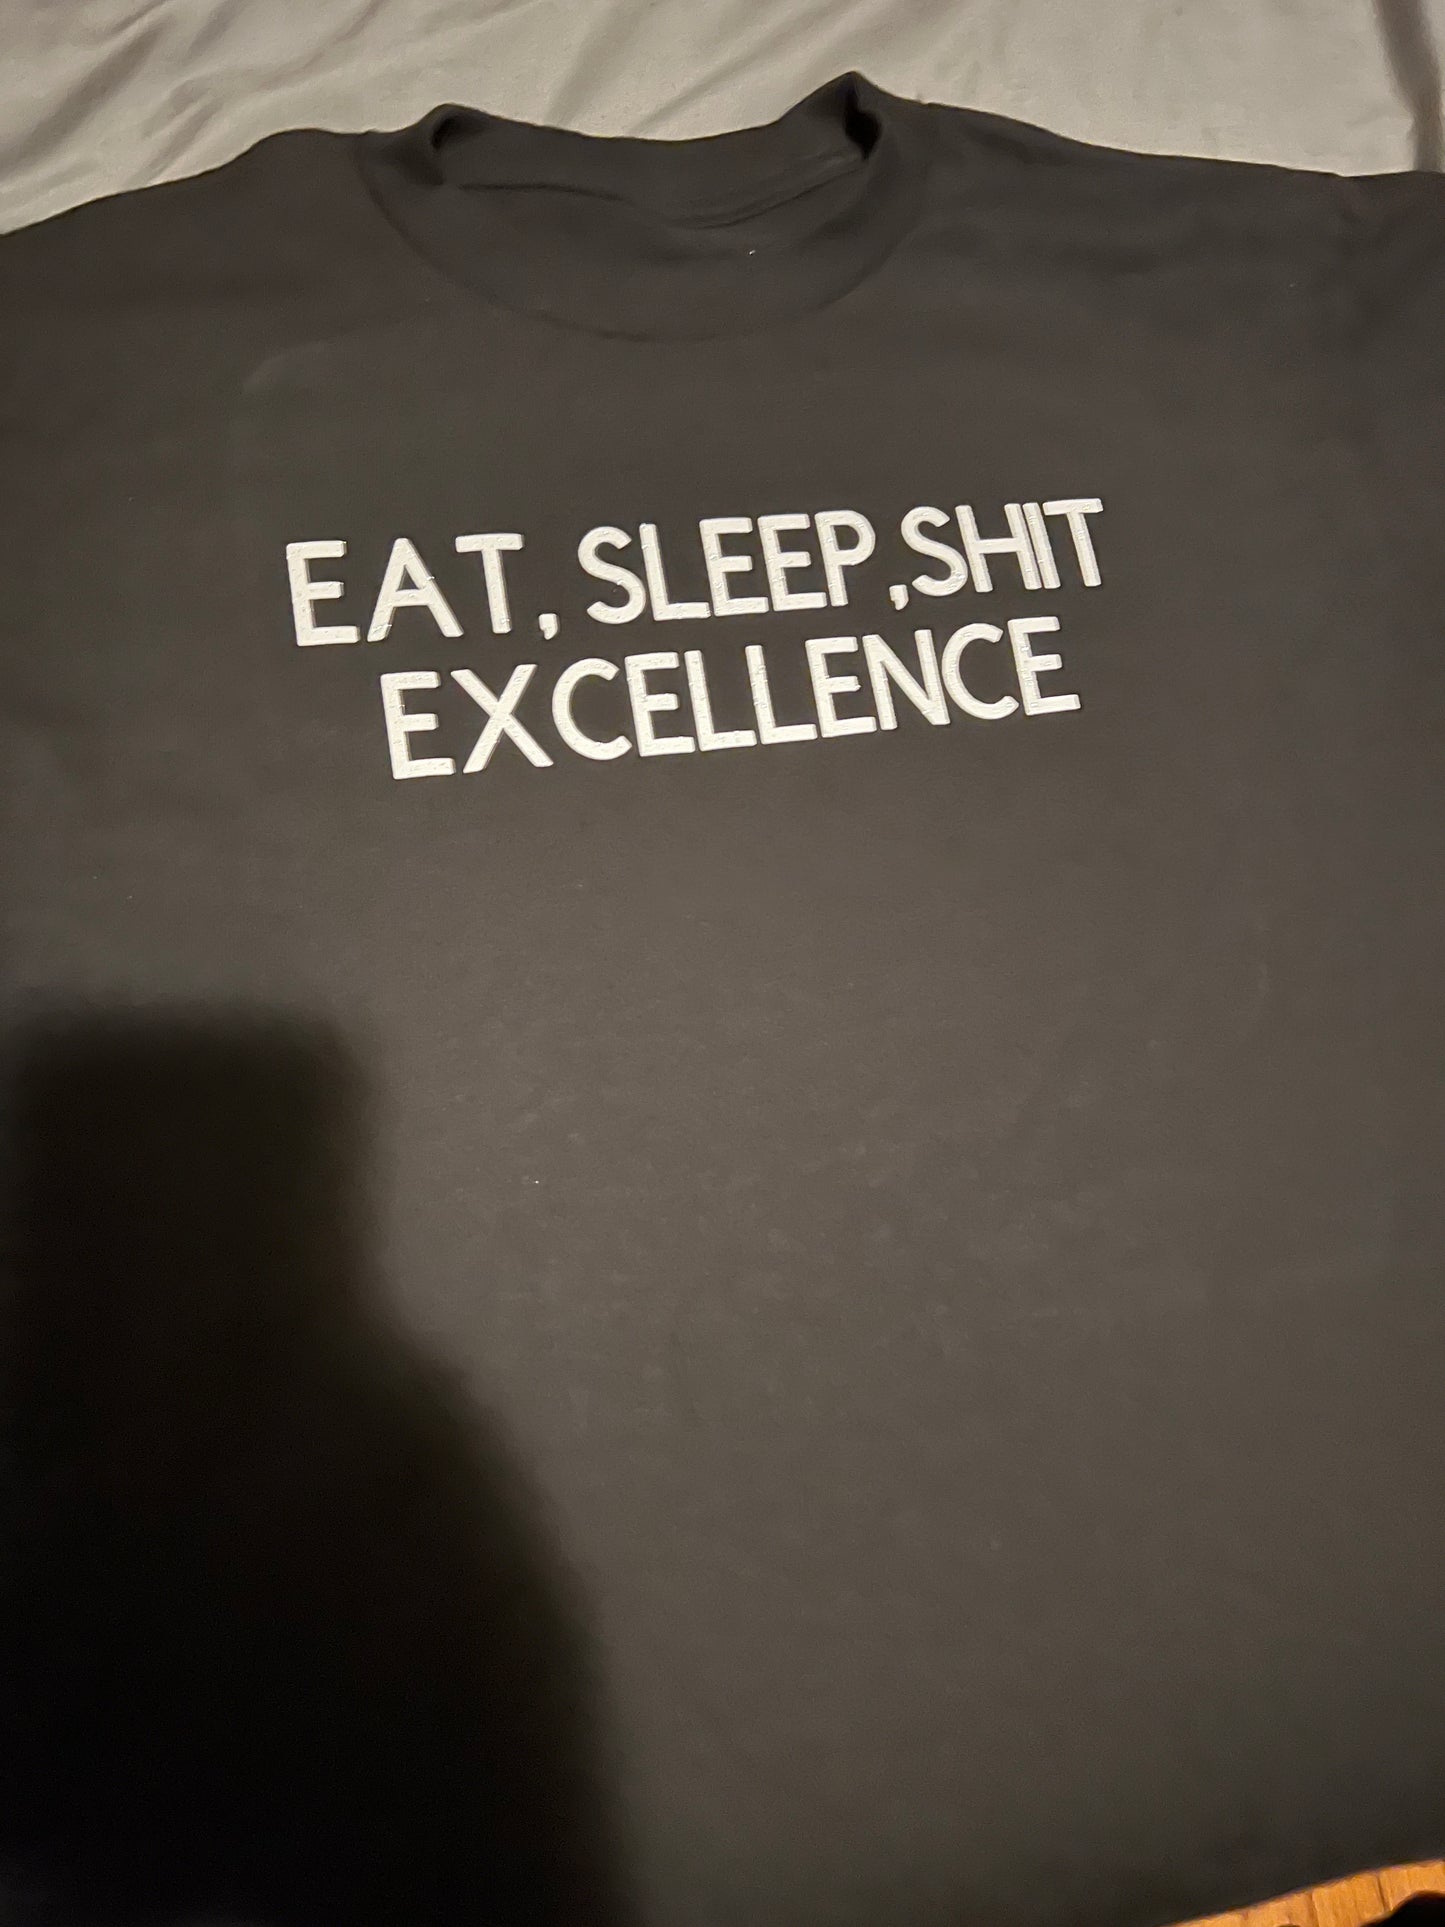 Eat,Sleep,Sh*t shirt